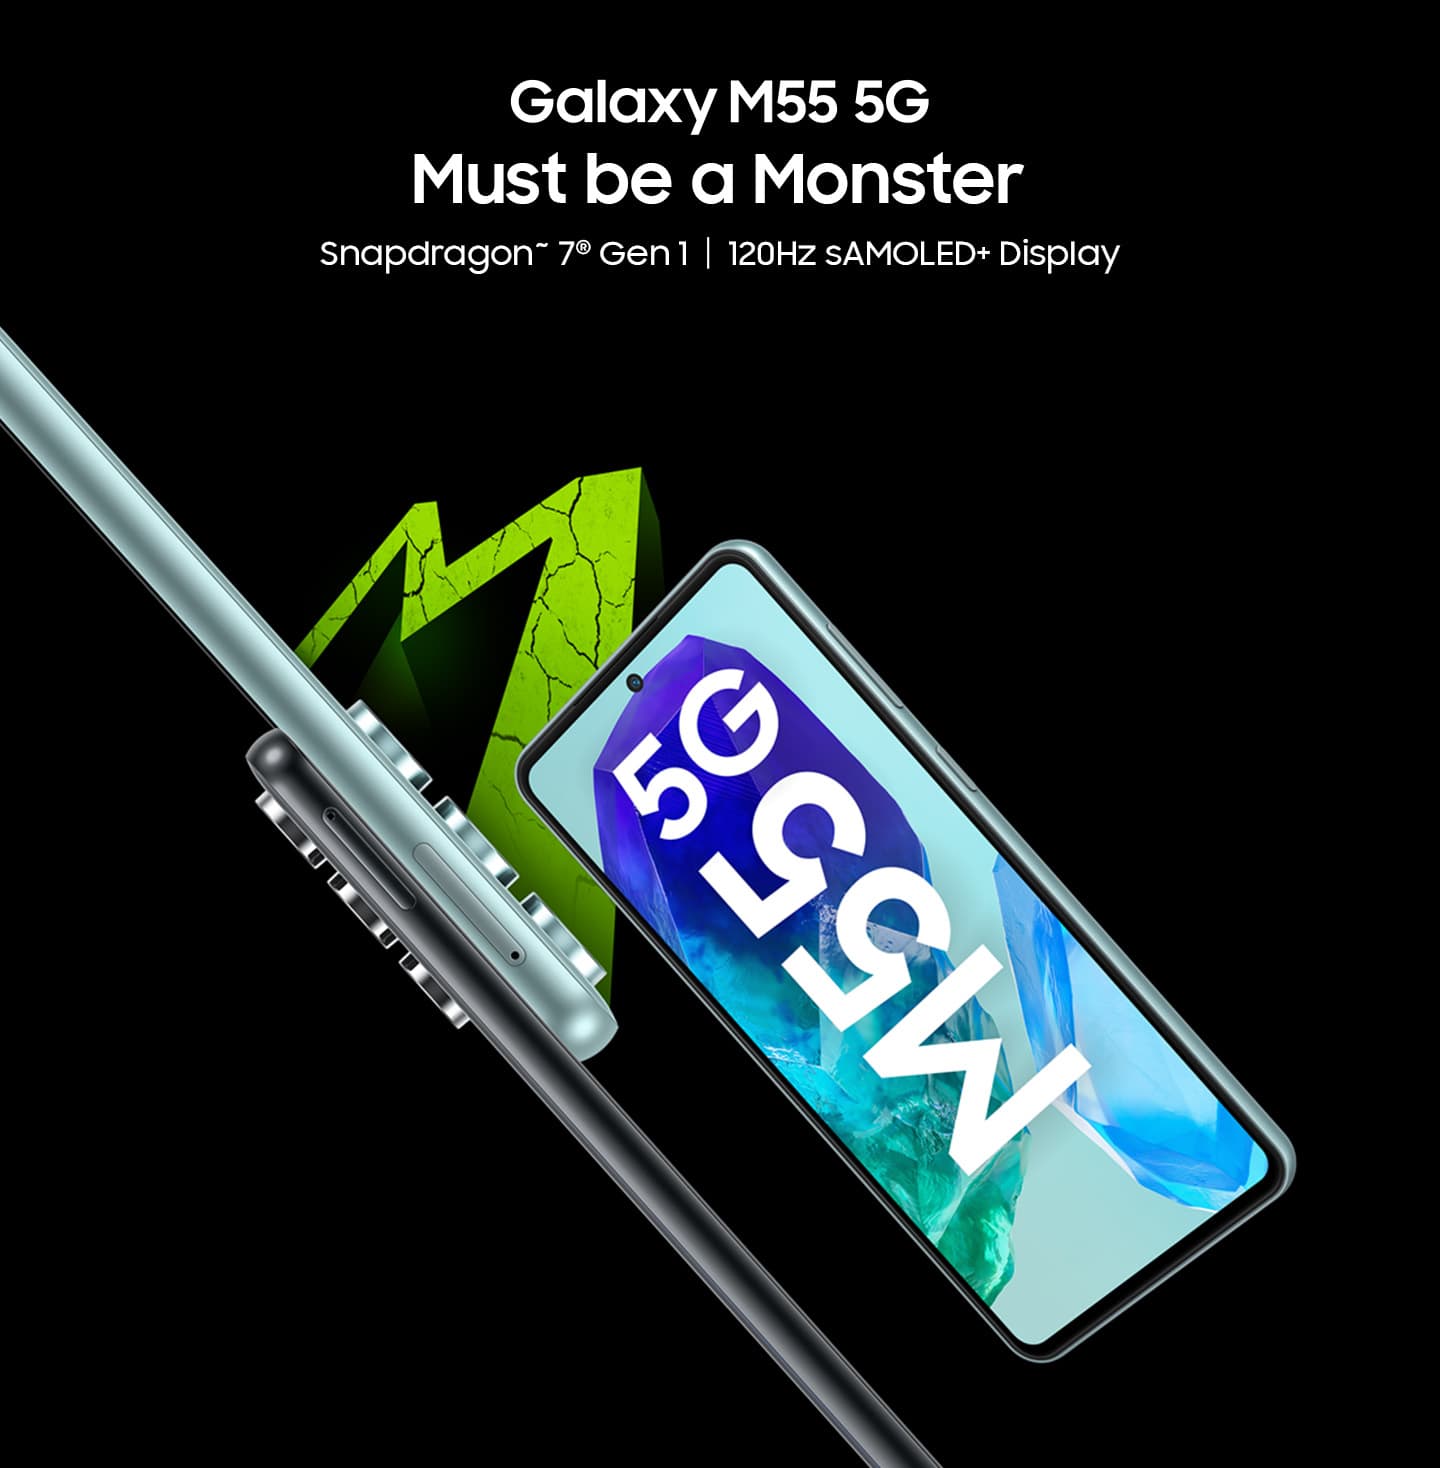 Seis razones por las que su próximo teléfono inteligente debe ser un monstruo – Galaxy M55 5G